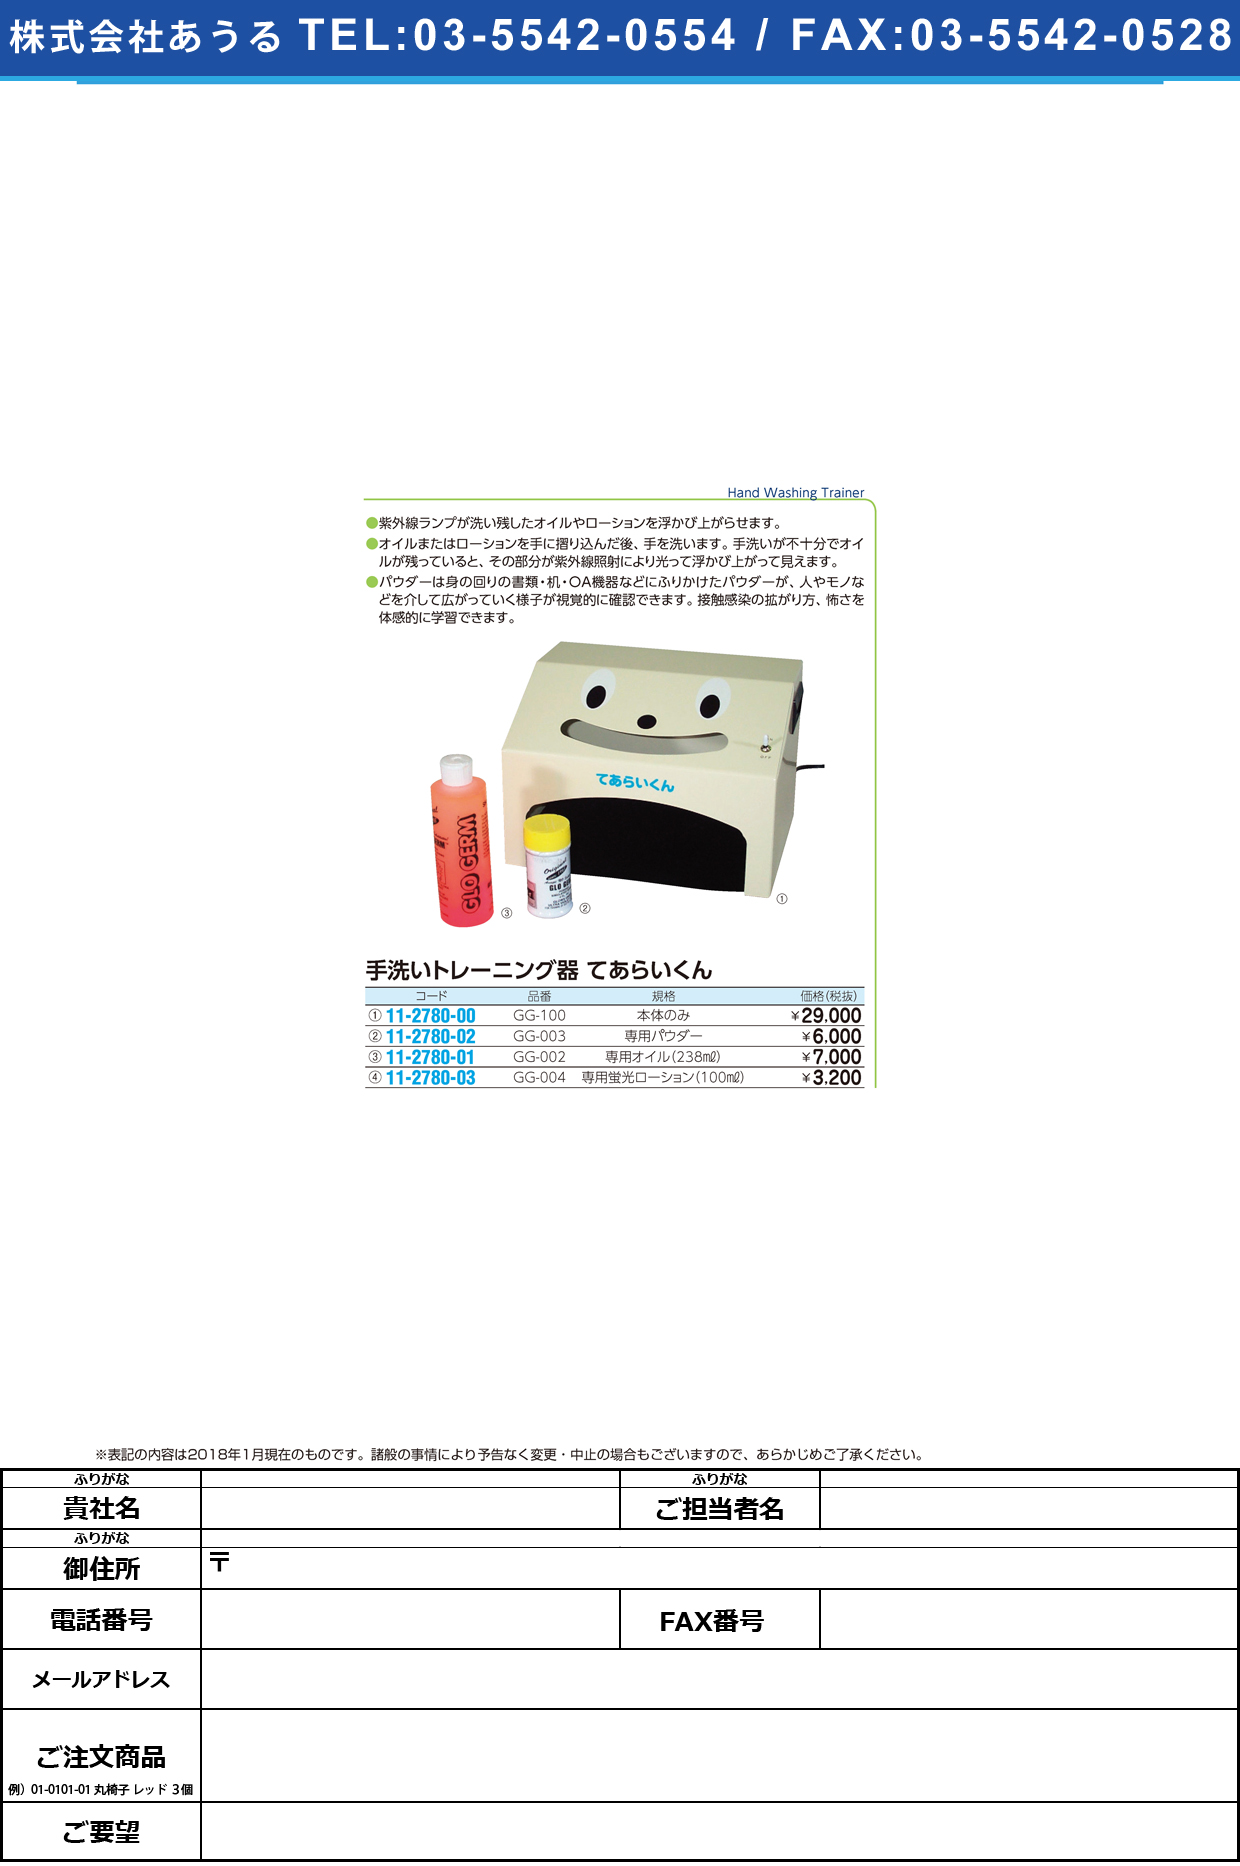 (11-2780-03)手洗いトレーニング器用蛍光ローション GG-004(100ML) ﾃｱﾗｲﾄﾚｰﾆﾝｸﾞｹｲｺｳﾛｰｼｮﾝ【1本単位】【2018年カタログ商品】